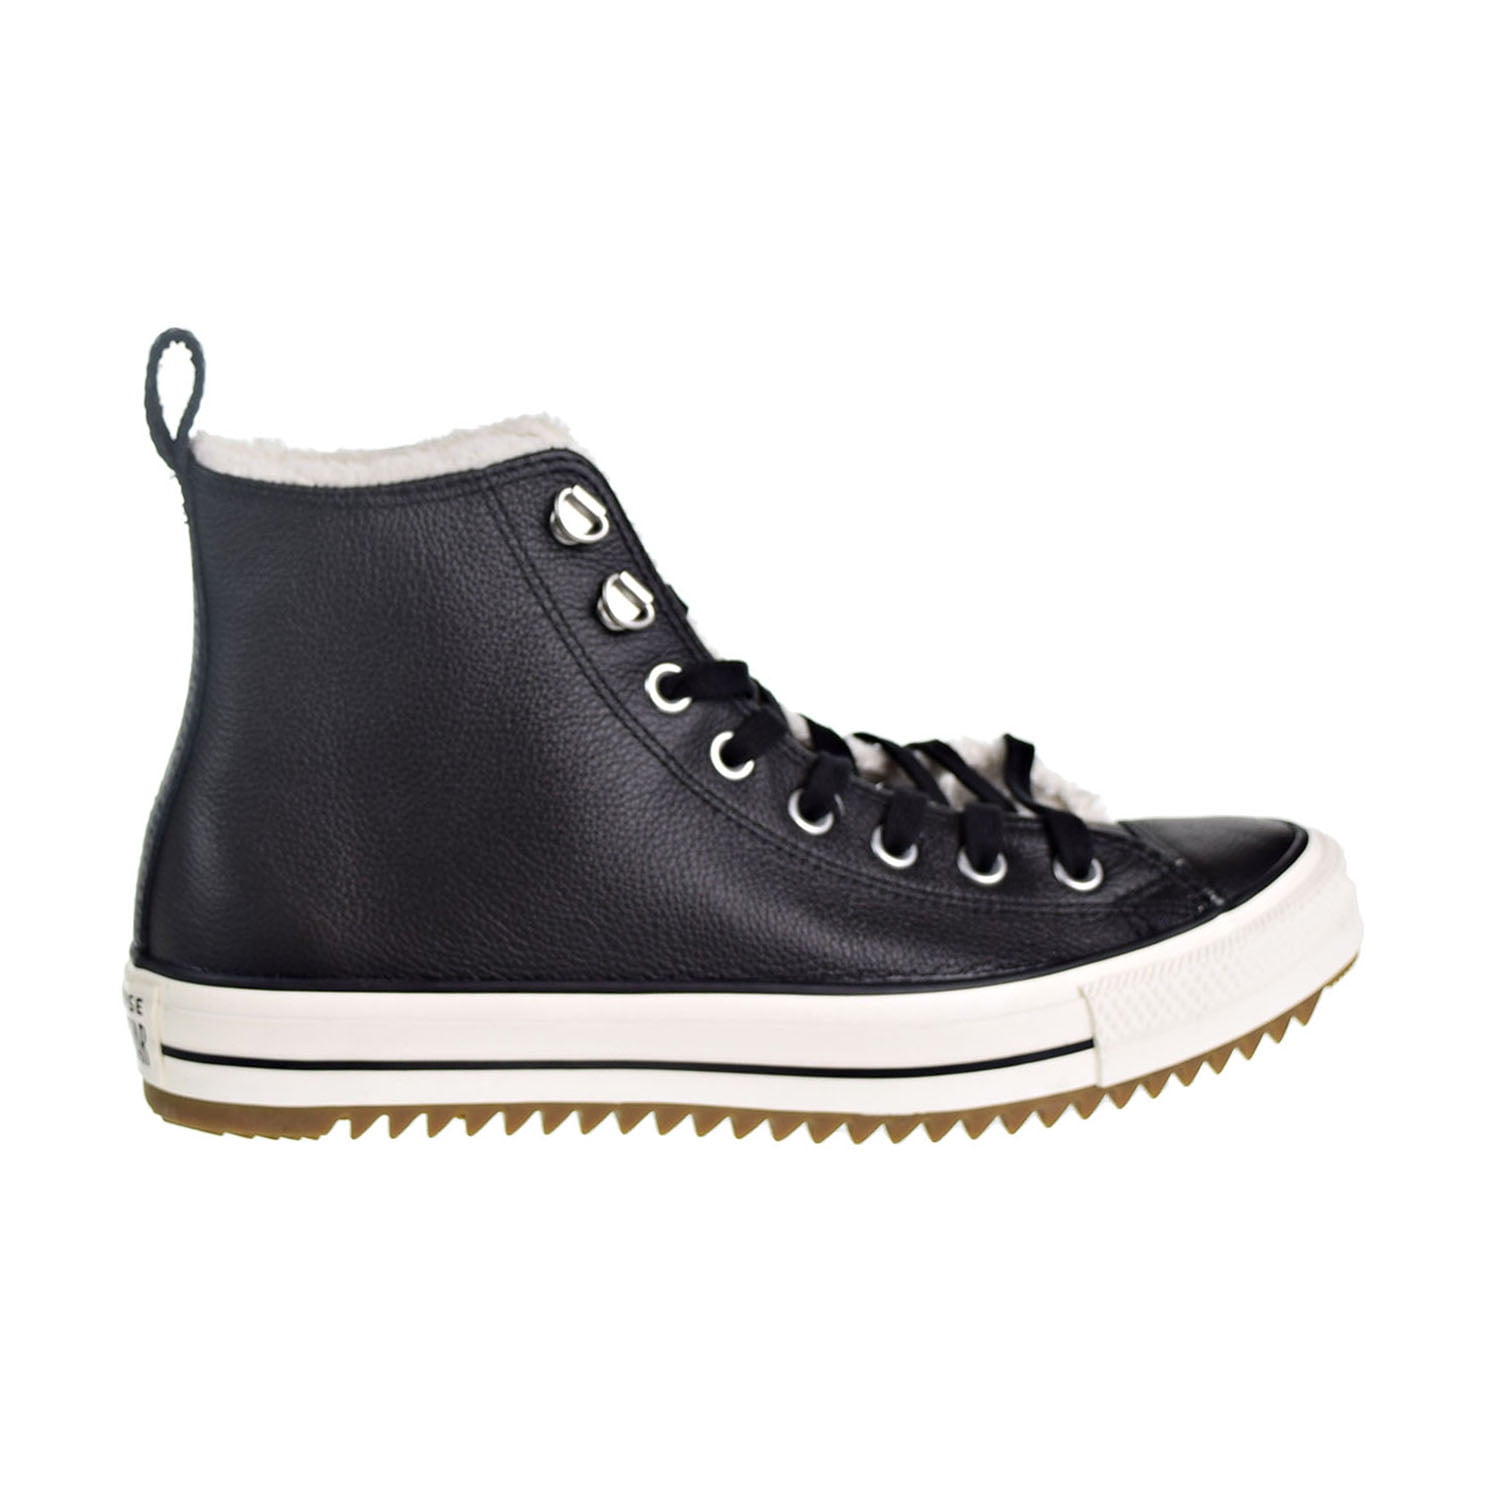 Chuck All Star Hiker Boot Men's/Big Shoes Black-Egret- Gum 161512c - Walmart.com